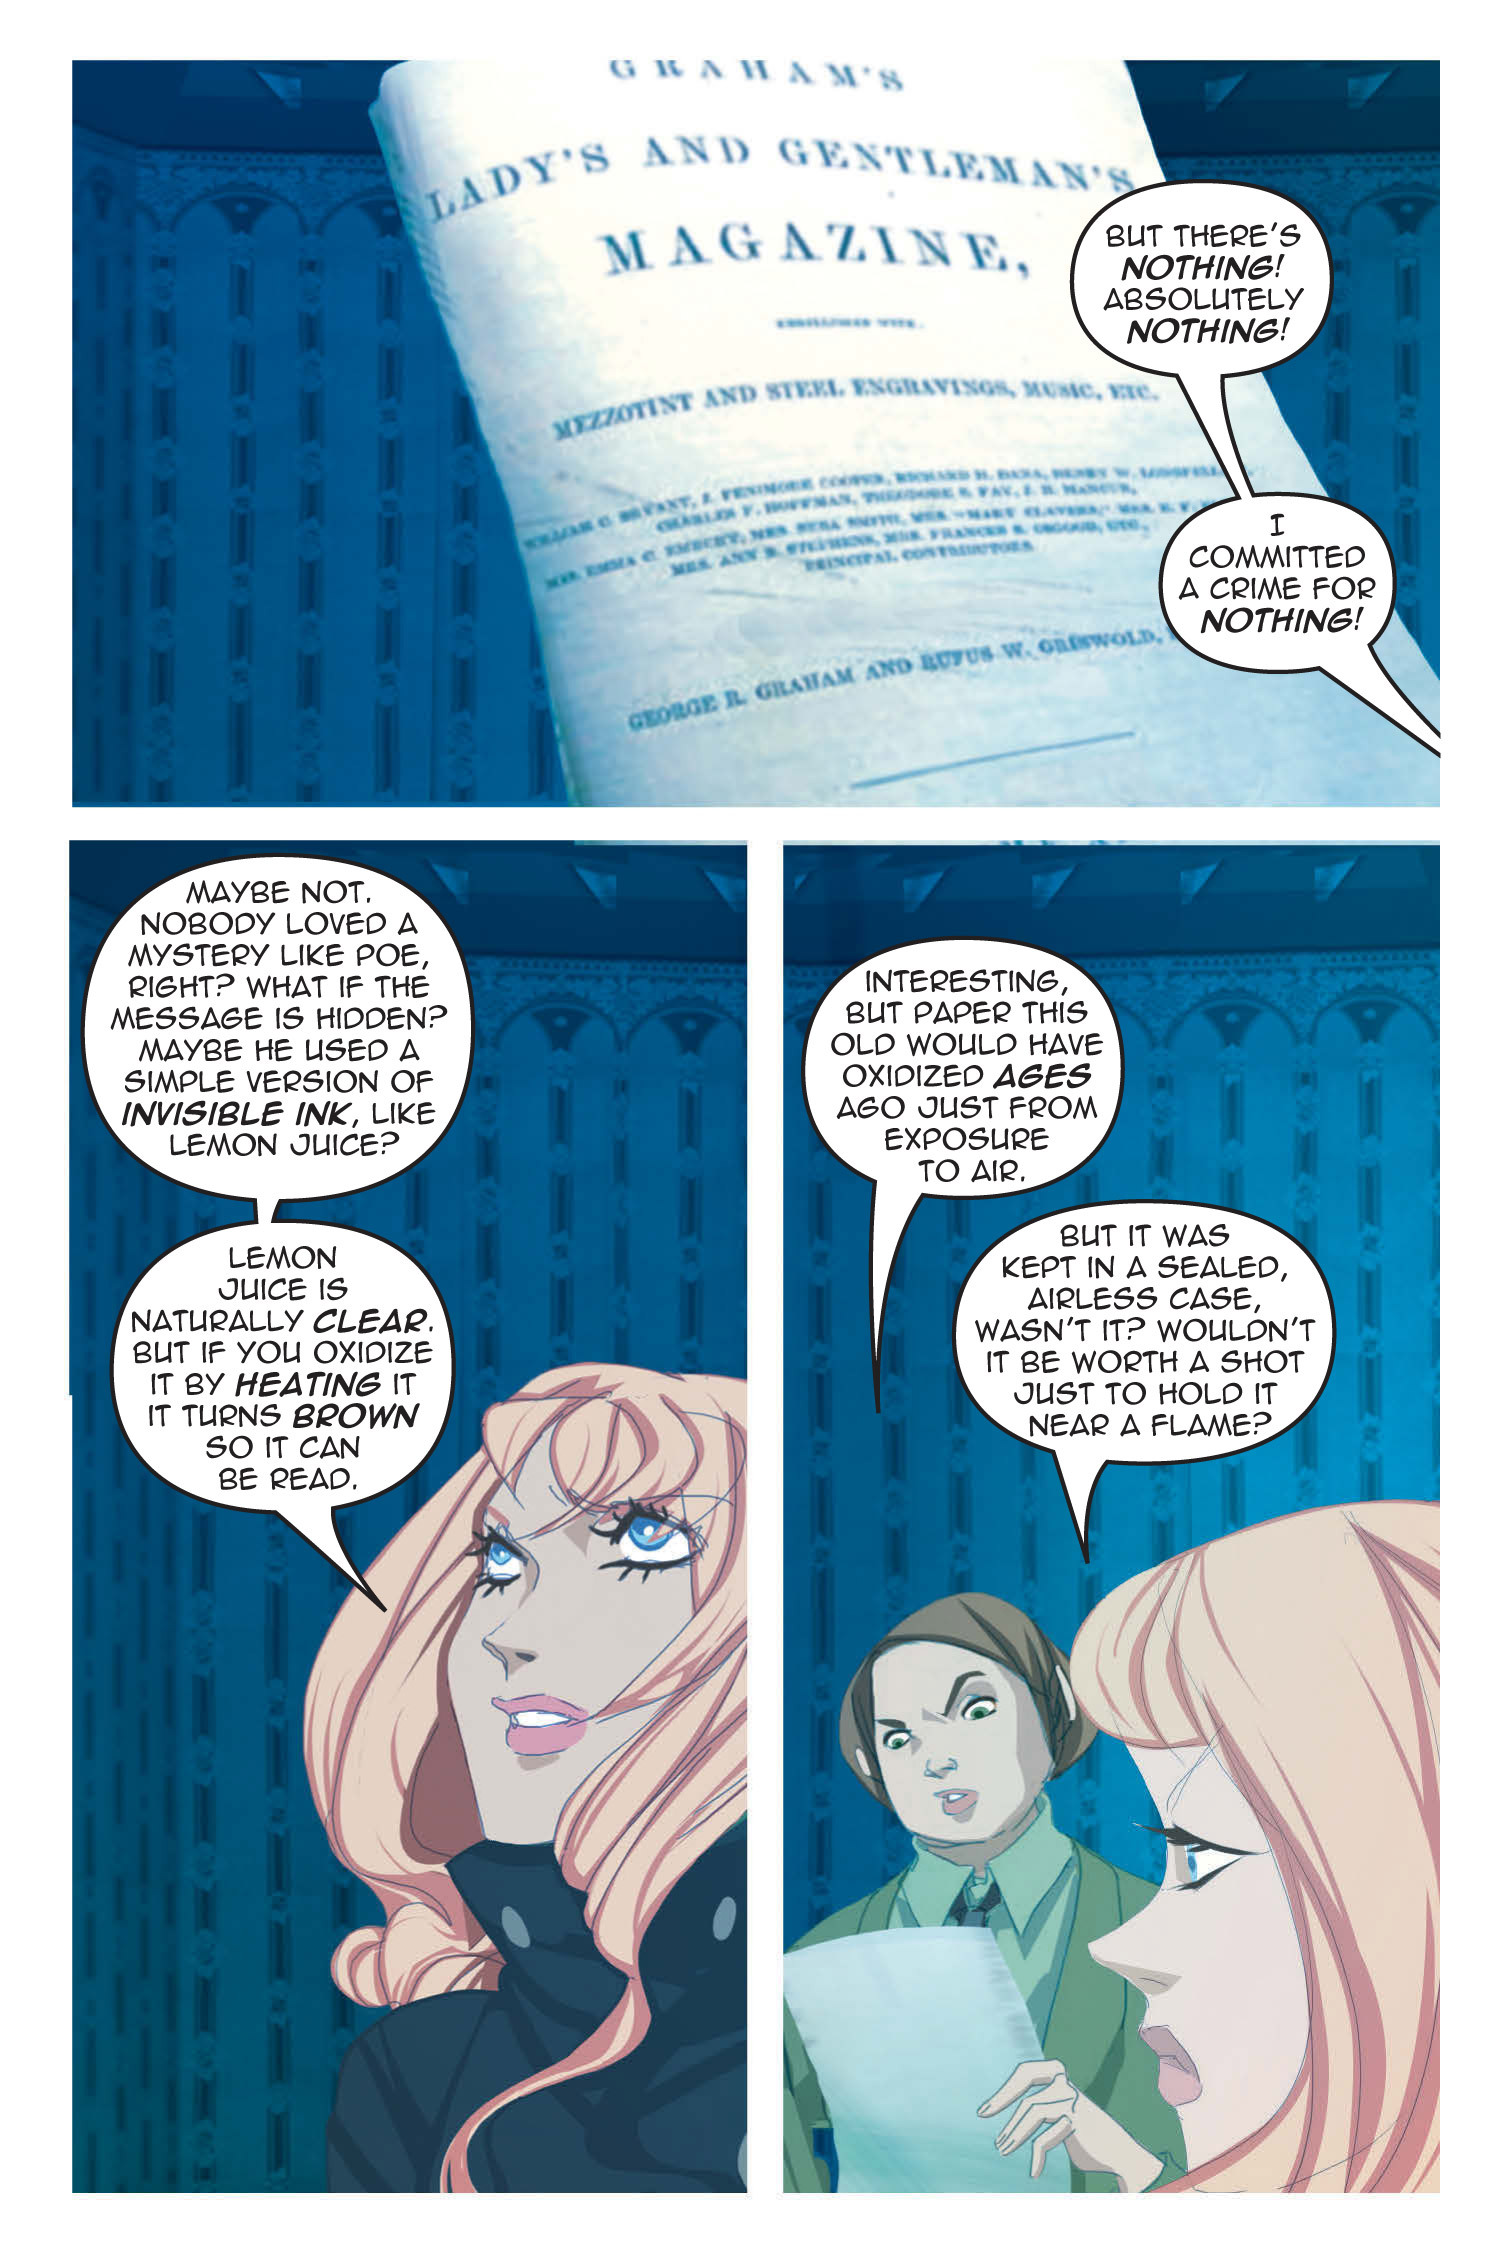 Read online Nancy Drew comic -  Issue #21 - 37